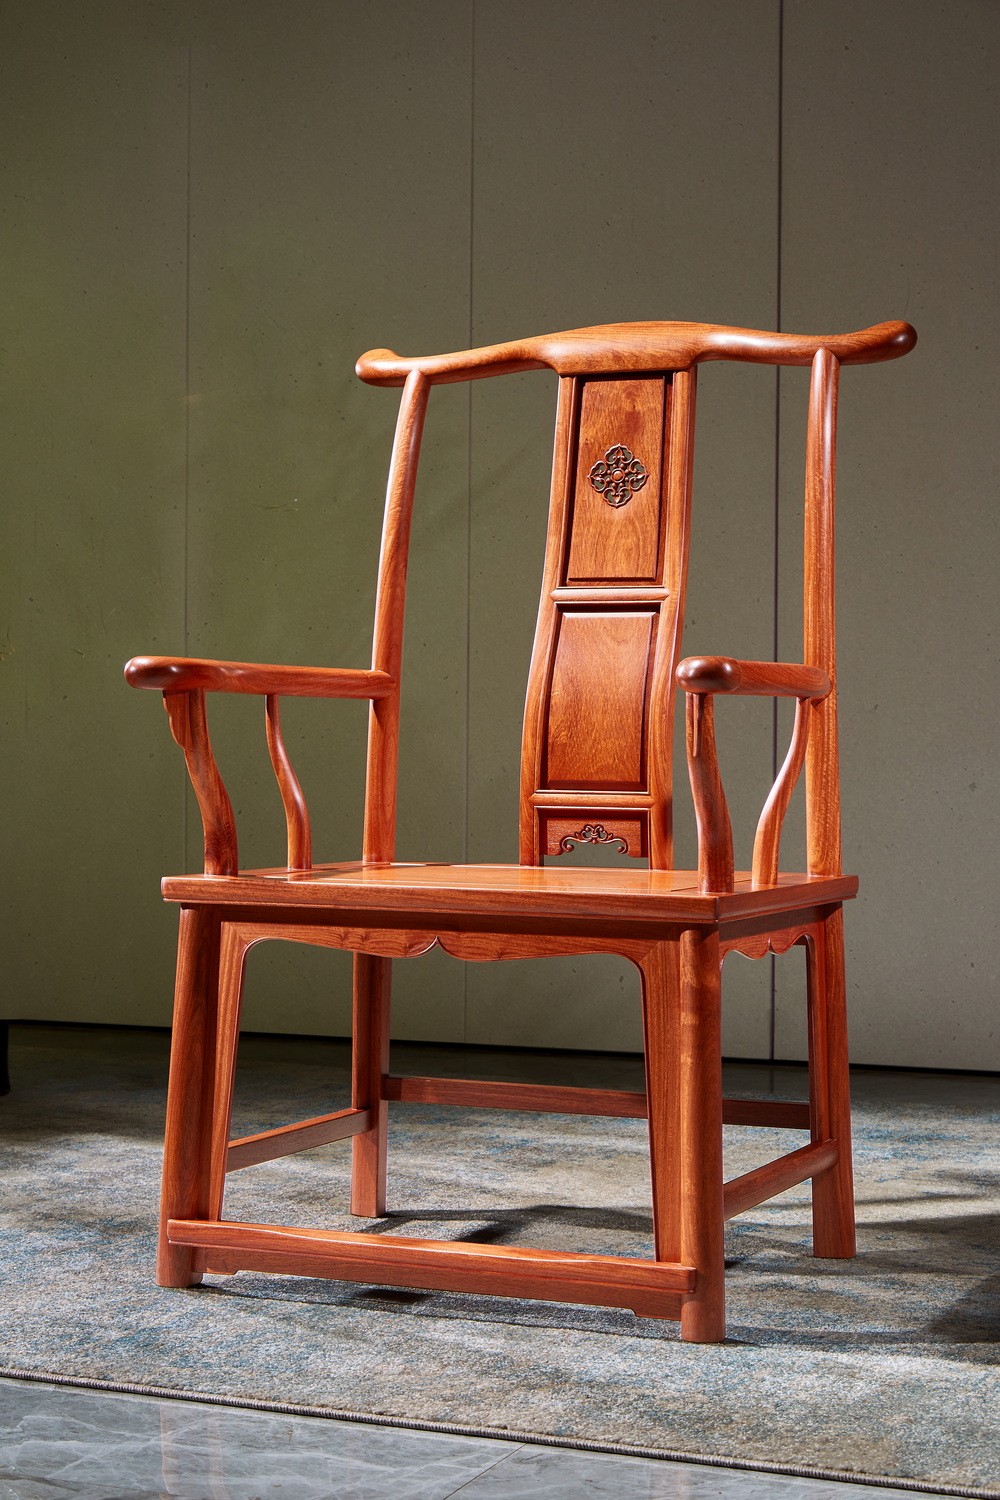 坐具上的情怀 中国古代椅子的发展,可以简洁地用四个字来概括:从